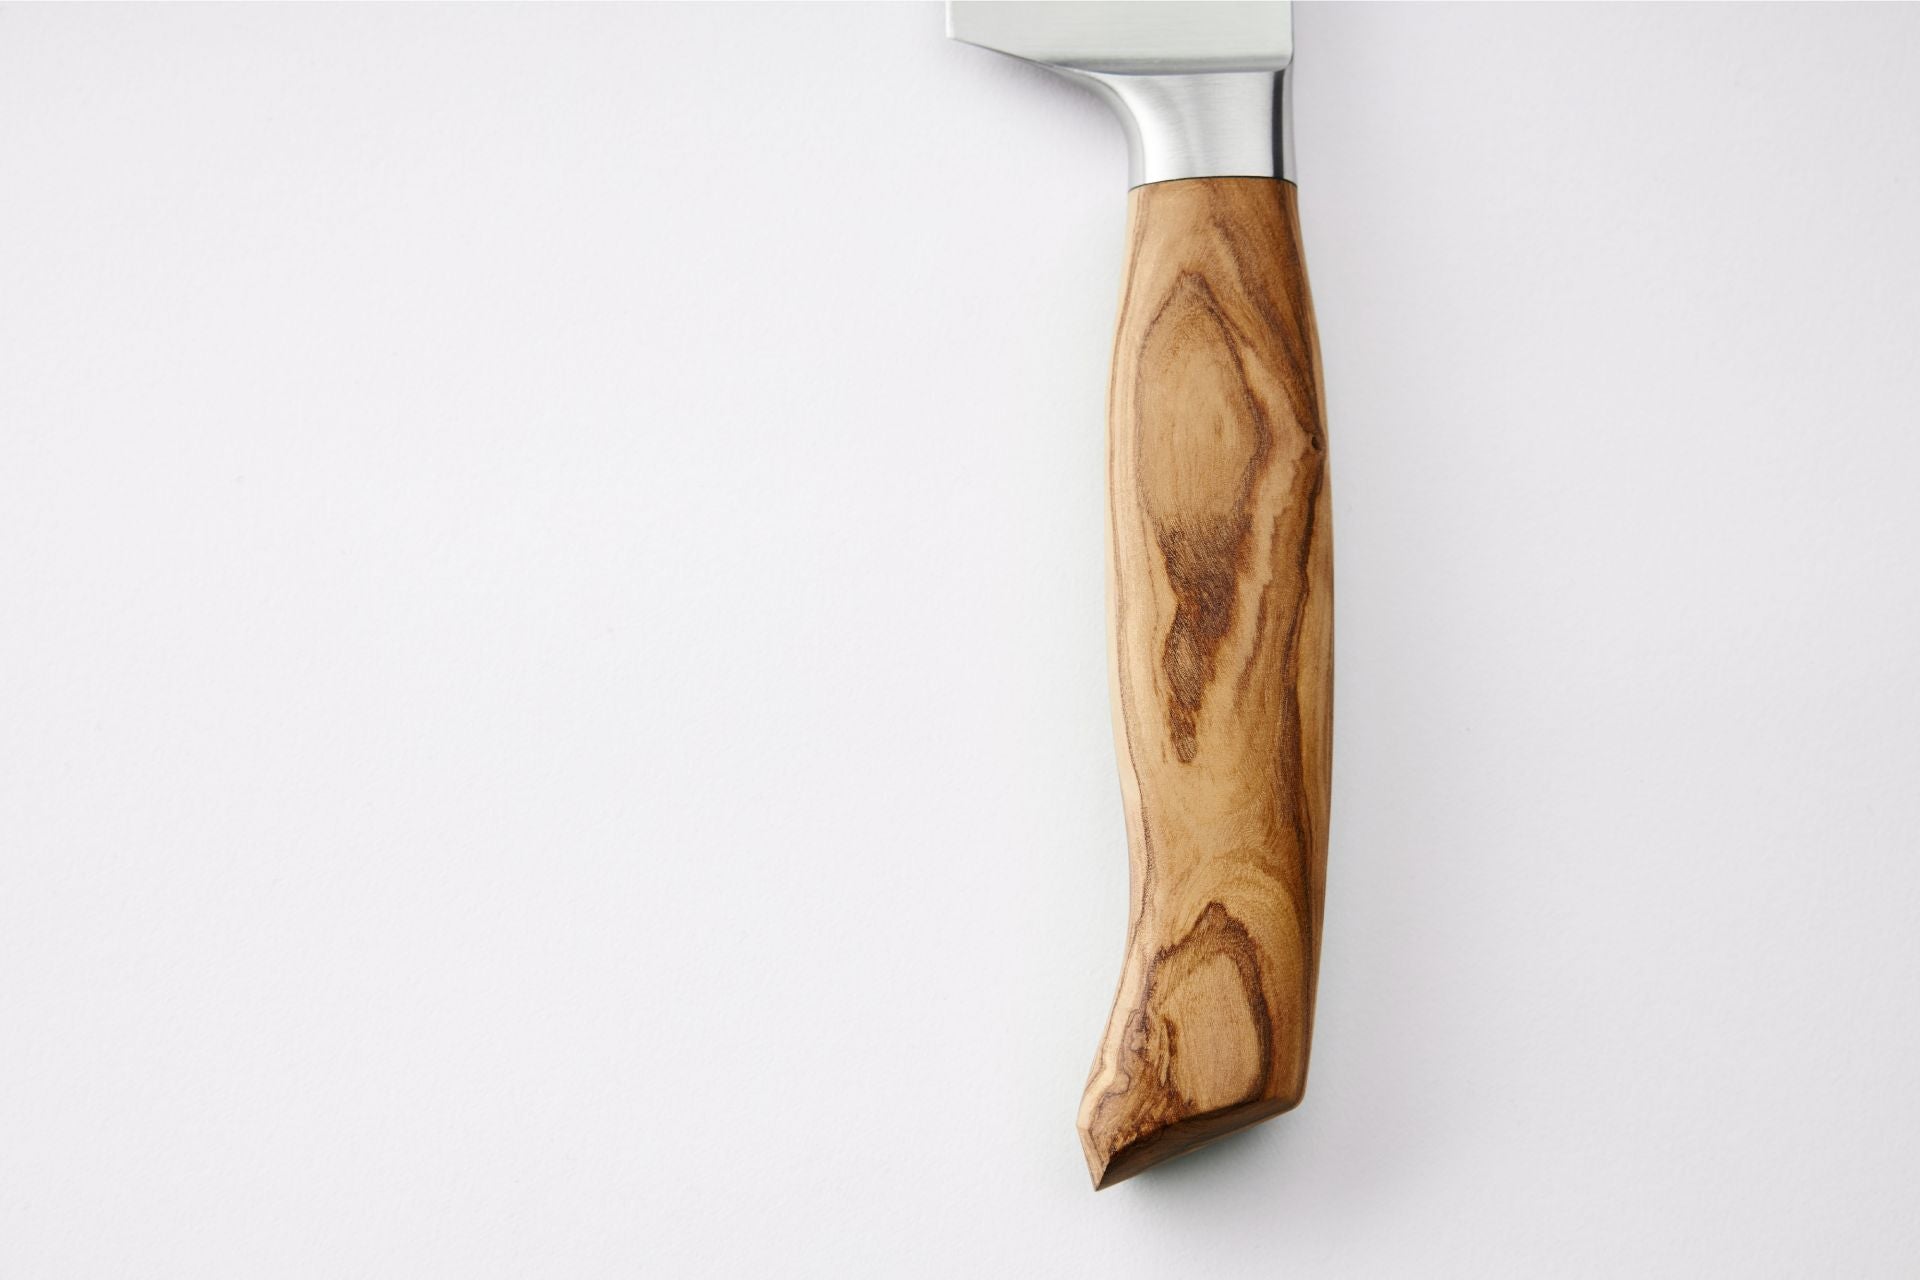 Küchenscharf Messerset 3-tlg [30 Jahre Garantie & Schleifservice]